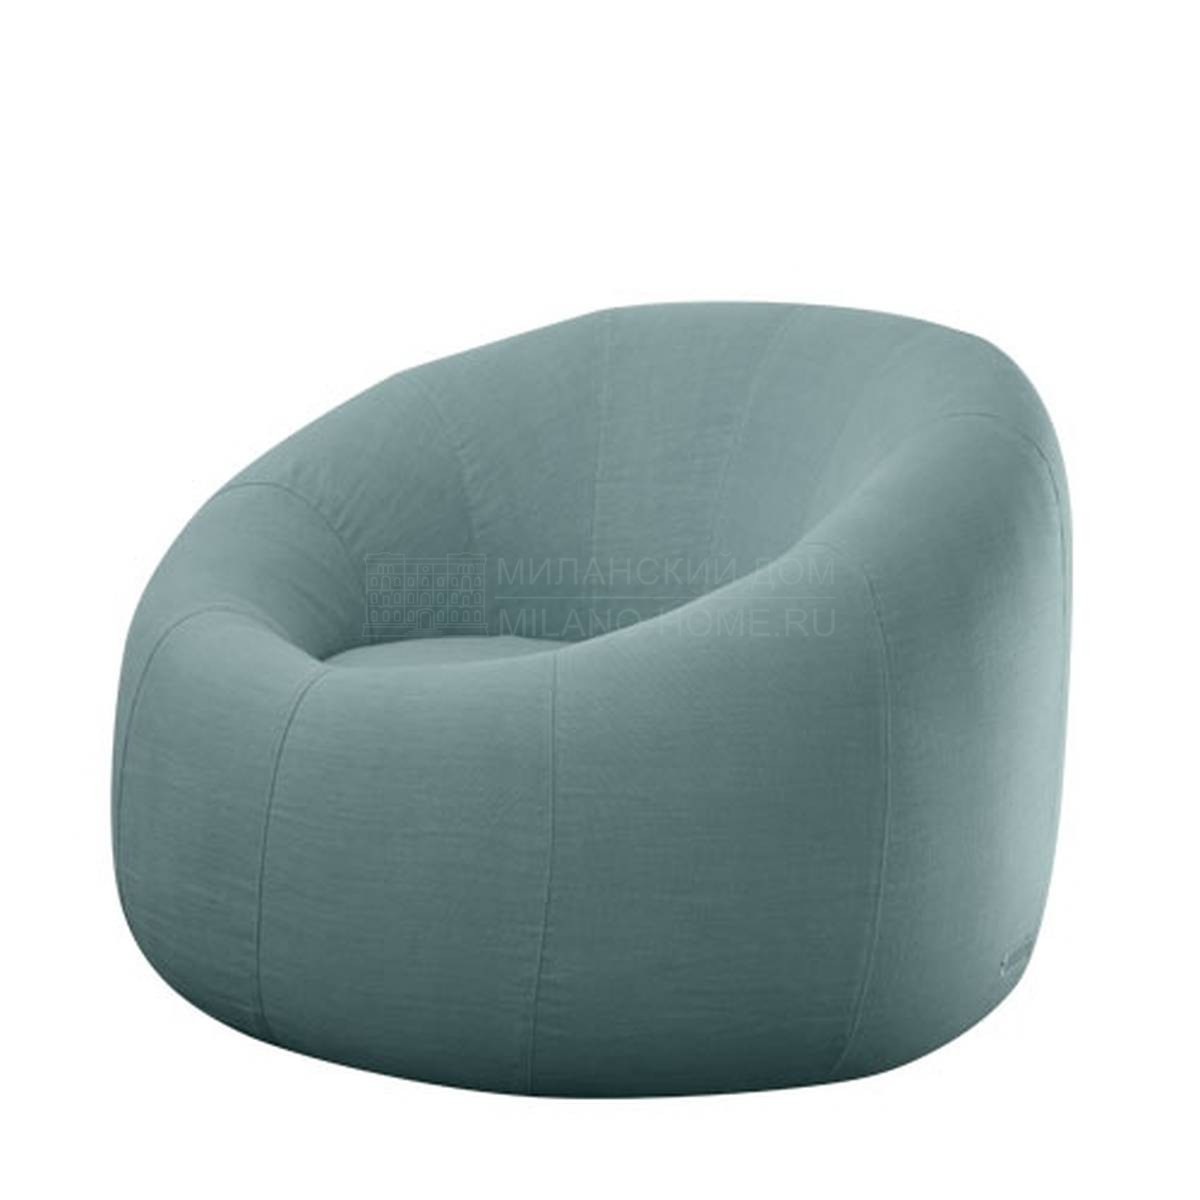 Кресло Ball/ armchair из Италии фабрики SOFTHOUSE